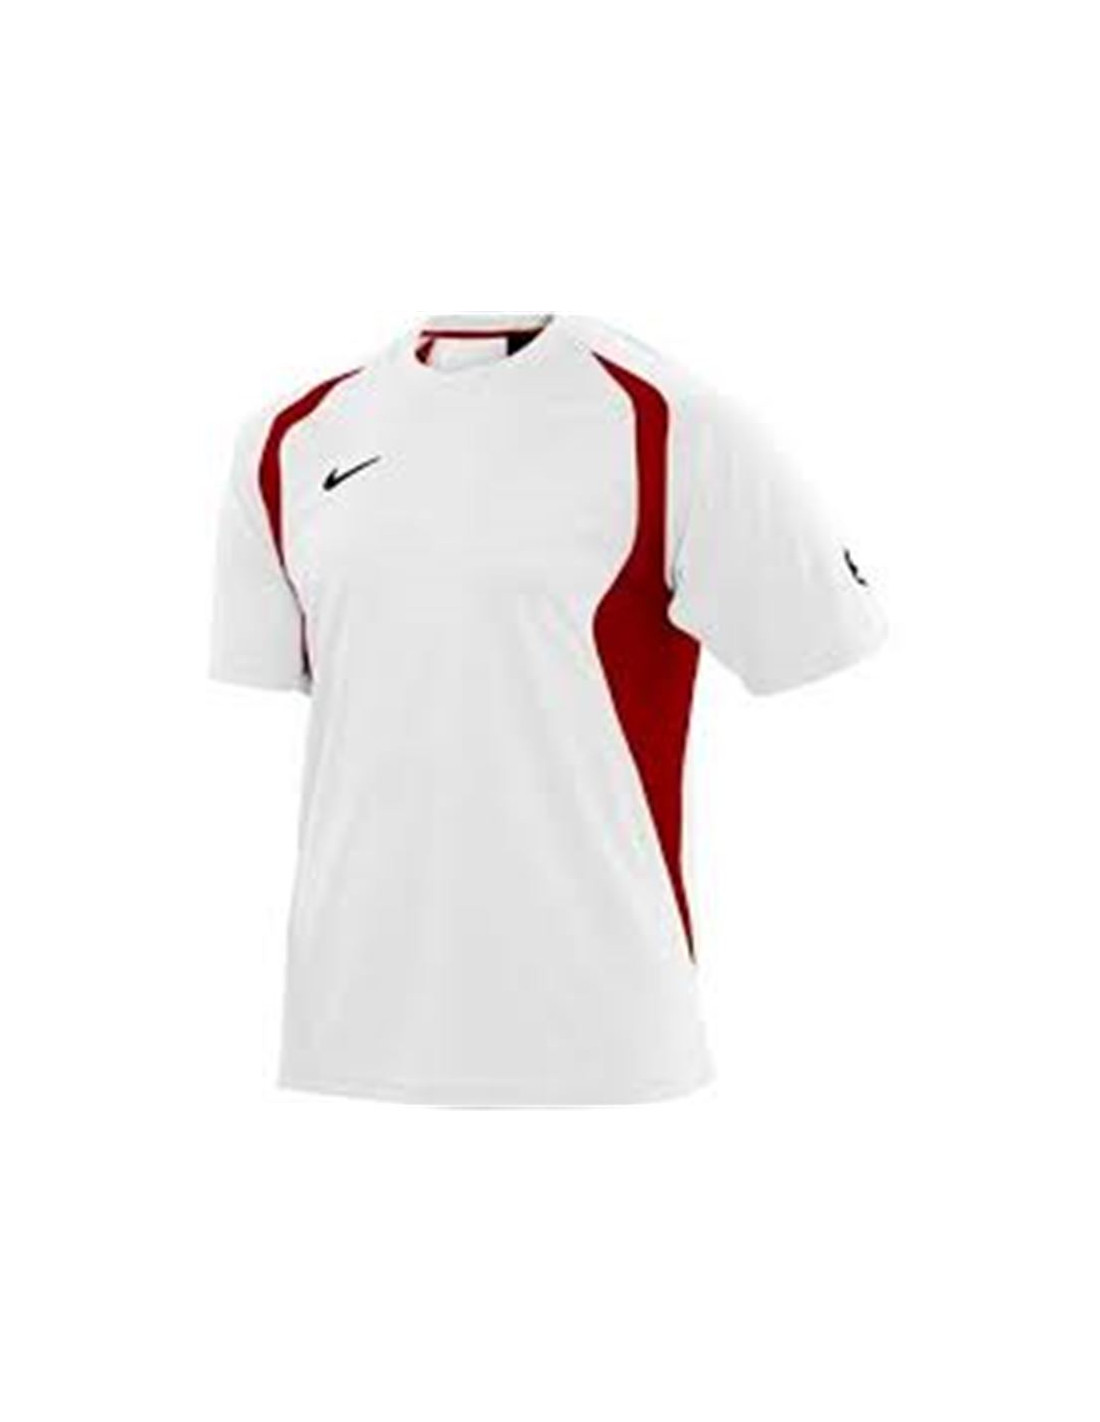 Camiseta sportswear nike striker game